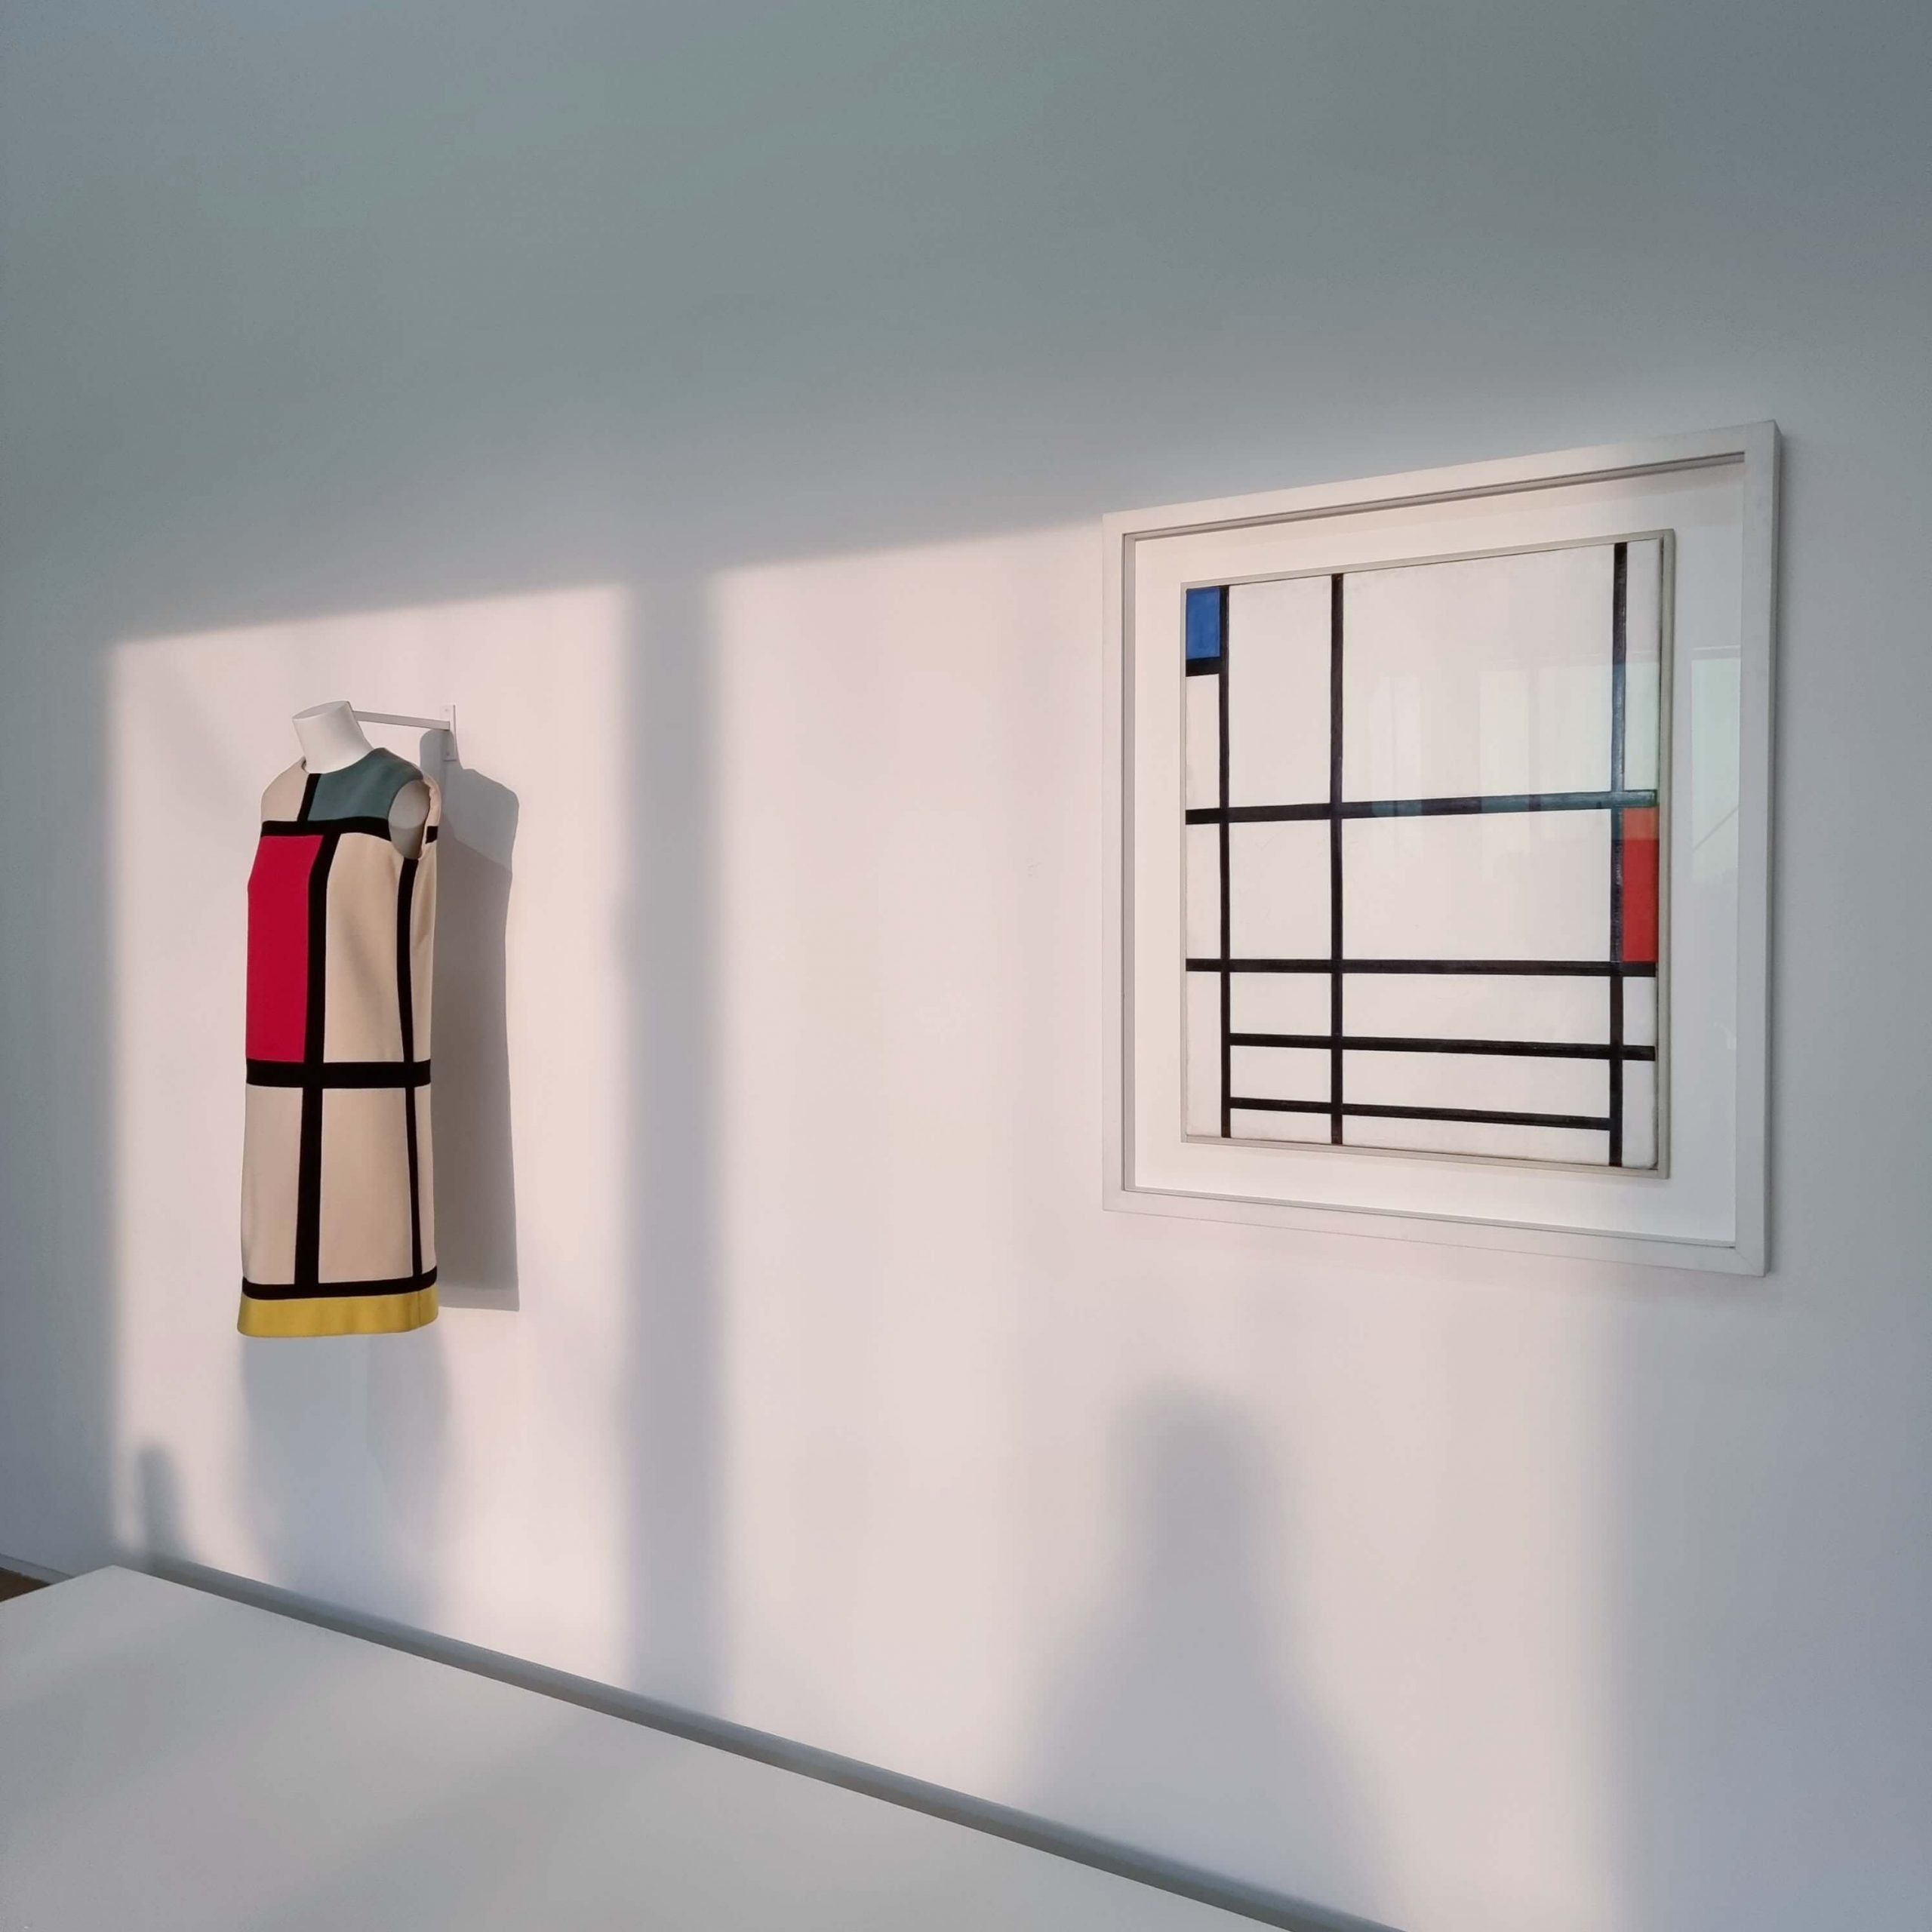 Exhibition view / Yves Saint Laurent aux Musées / Centre Pompidou, Paris, 2022